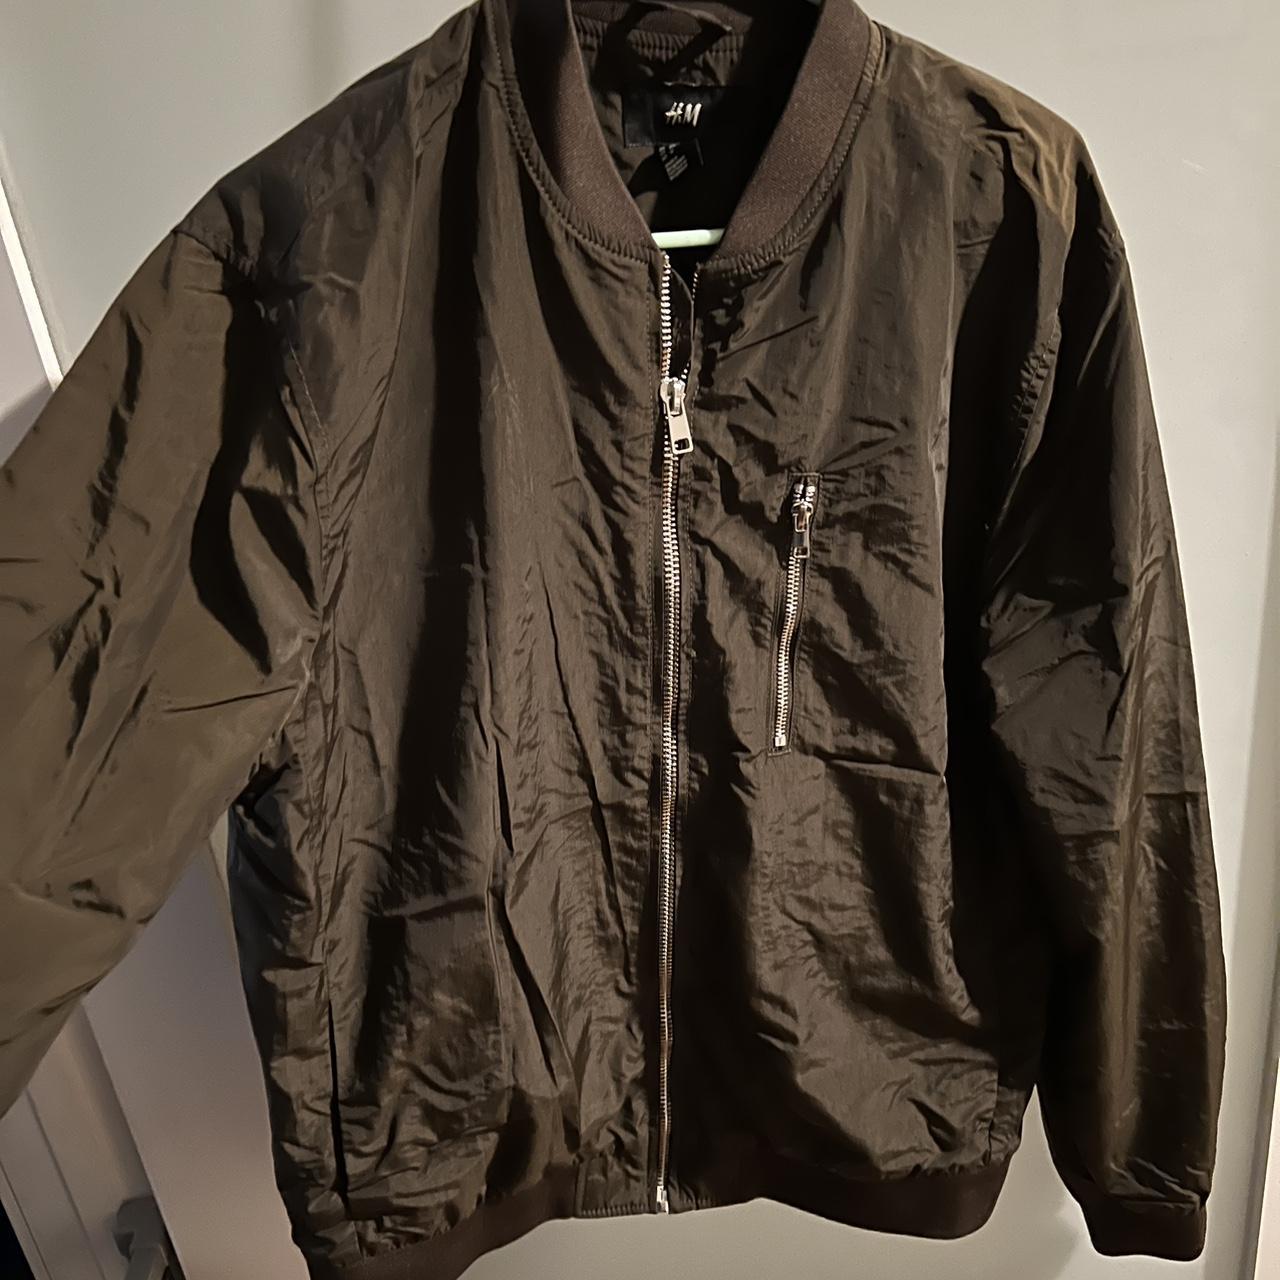 H&M brown bomber jacket. - Depop